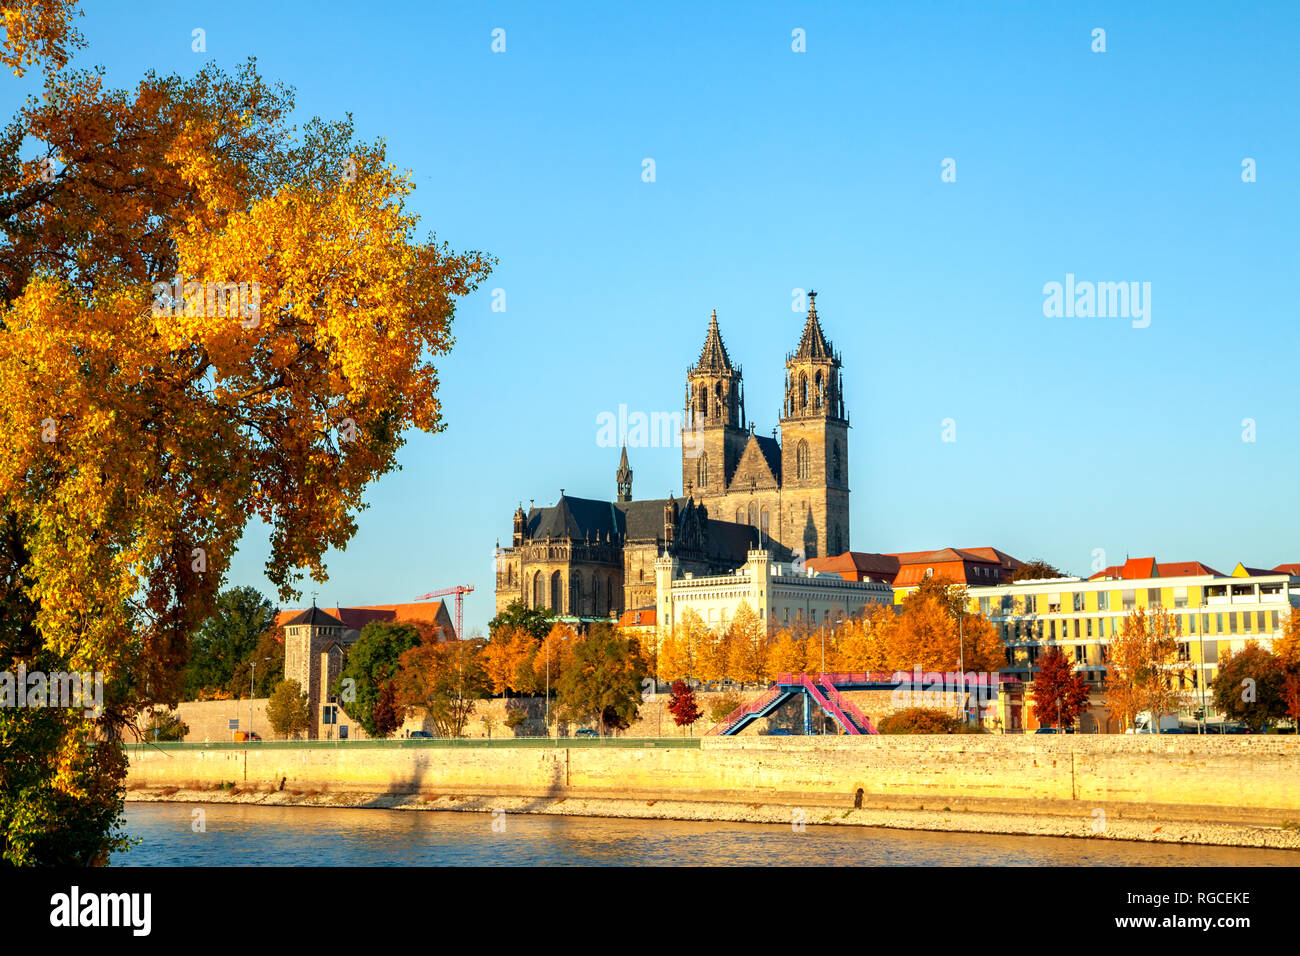 Alemania, en el Estado federado de Sajonia-Anhalt, Magdeburgo, la Catedral de Magdeburgo y el río Elba Foto de stock